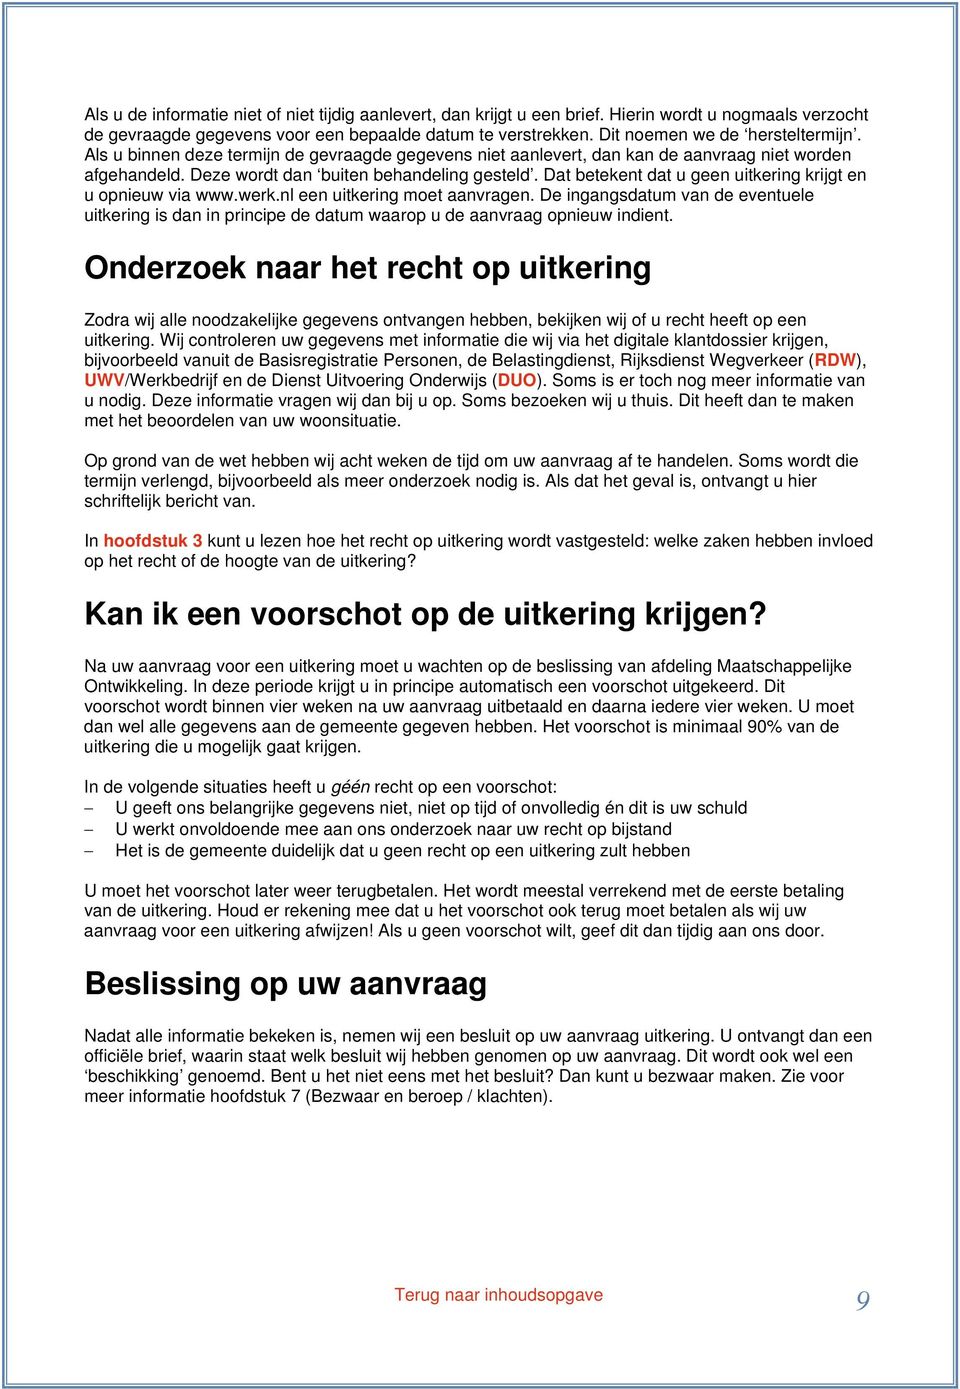 Dat betekent dat u geen uitkering krijgt en u opnieuw via www.werk.nl een uitkering moet aanvragen.